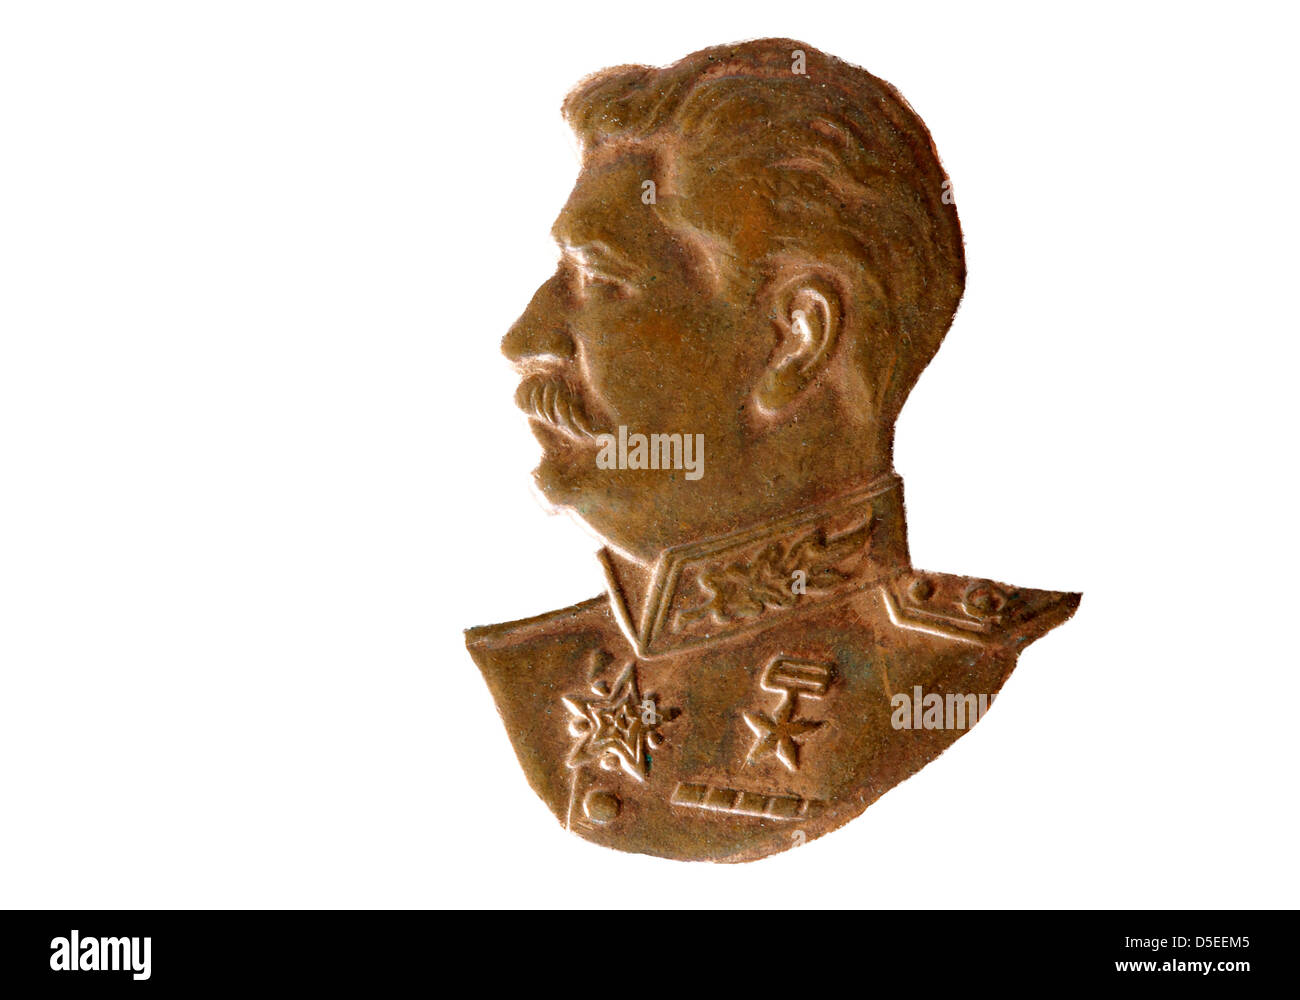 Porträt von Joseph Stalin von sowjetischen Medaille für tapfere Arbeit, Russland, 1945, auf weißem Hintergrund Stockfoto